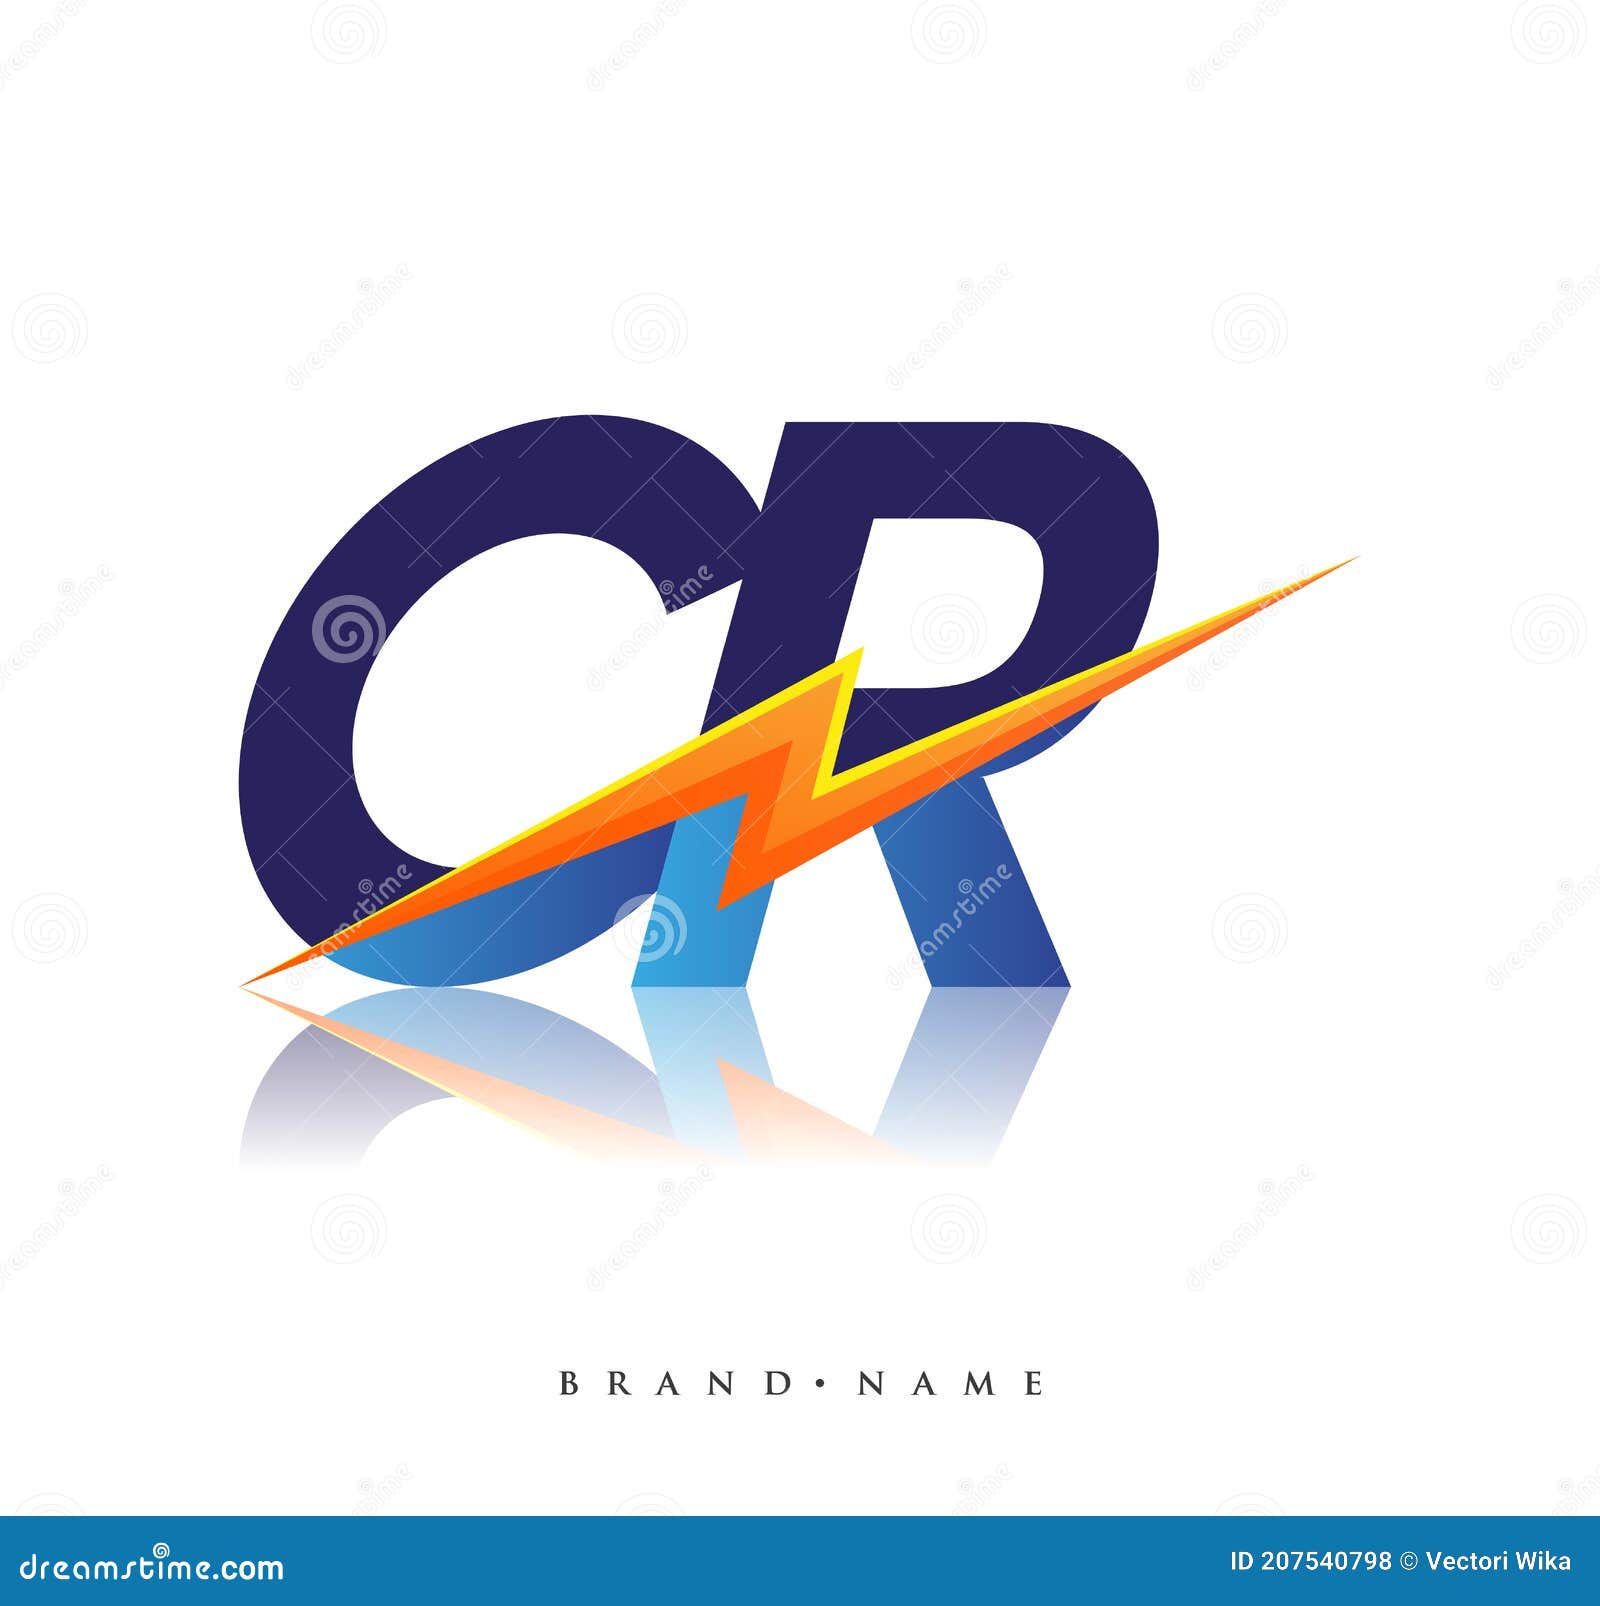 Share 129+ cr logo